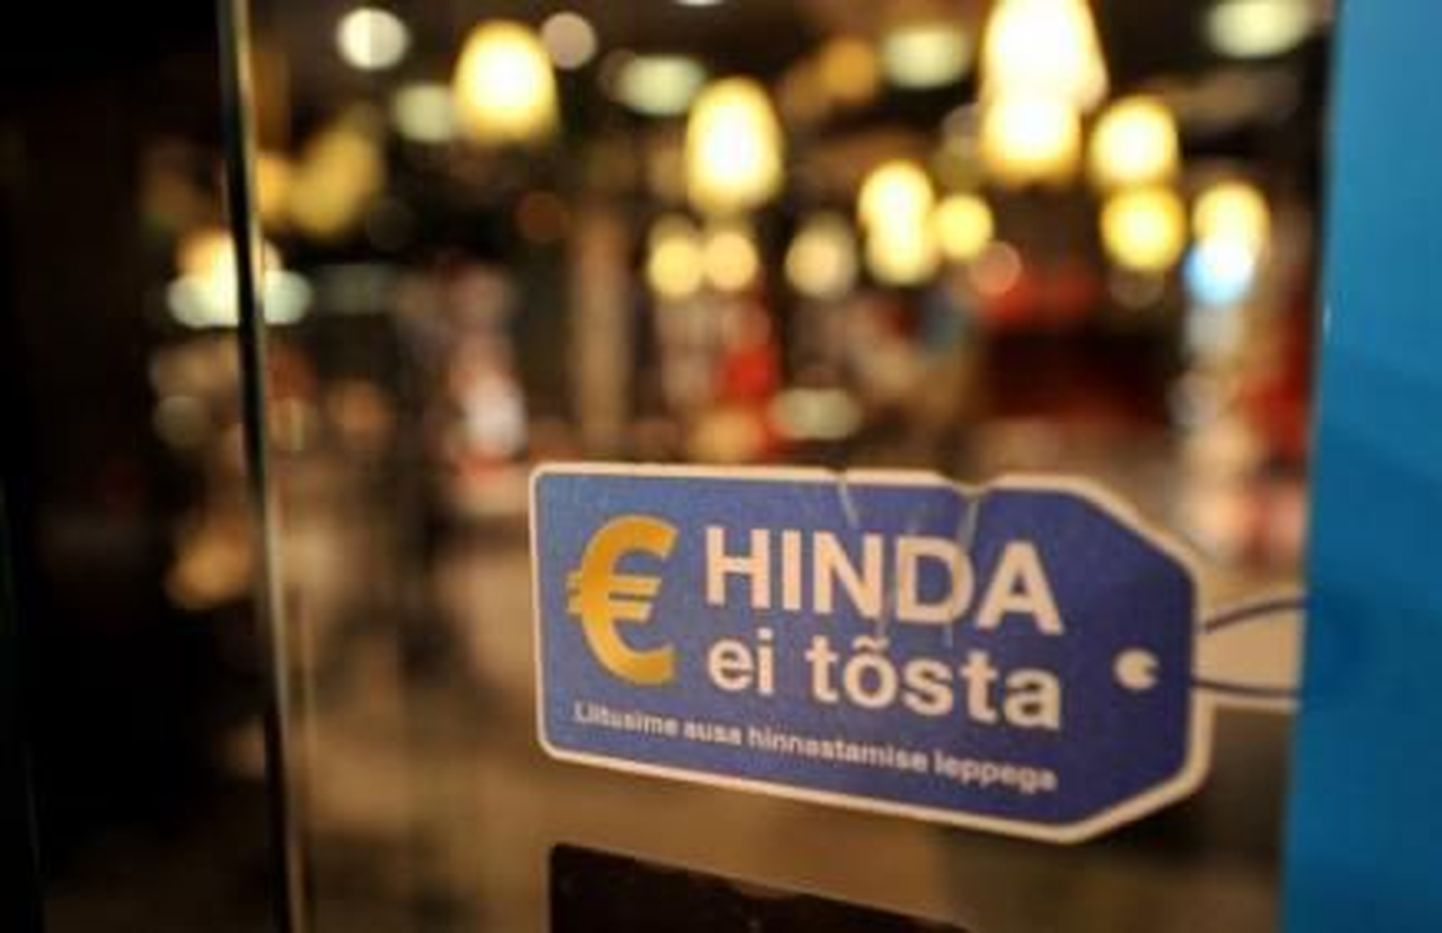 Loosung euro kasutuselevõtu eelsest ajast Eestist.